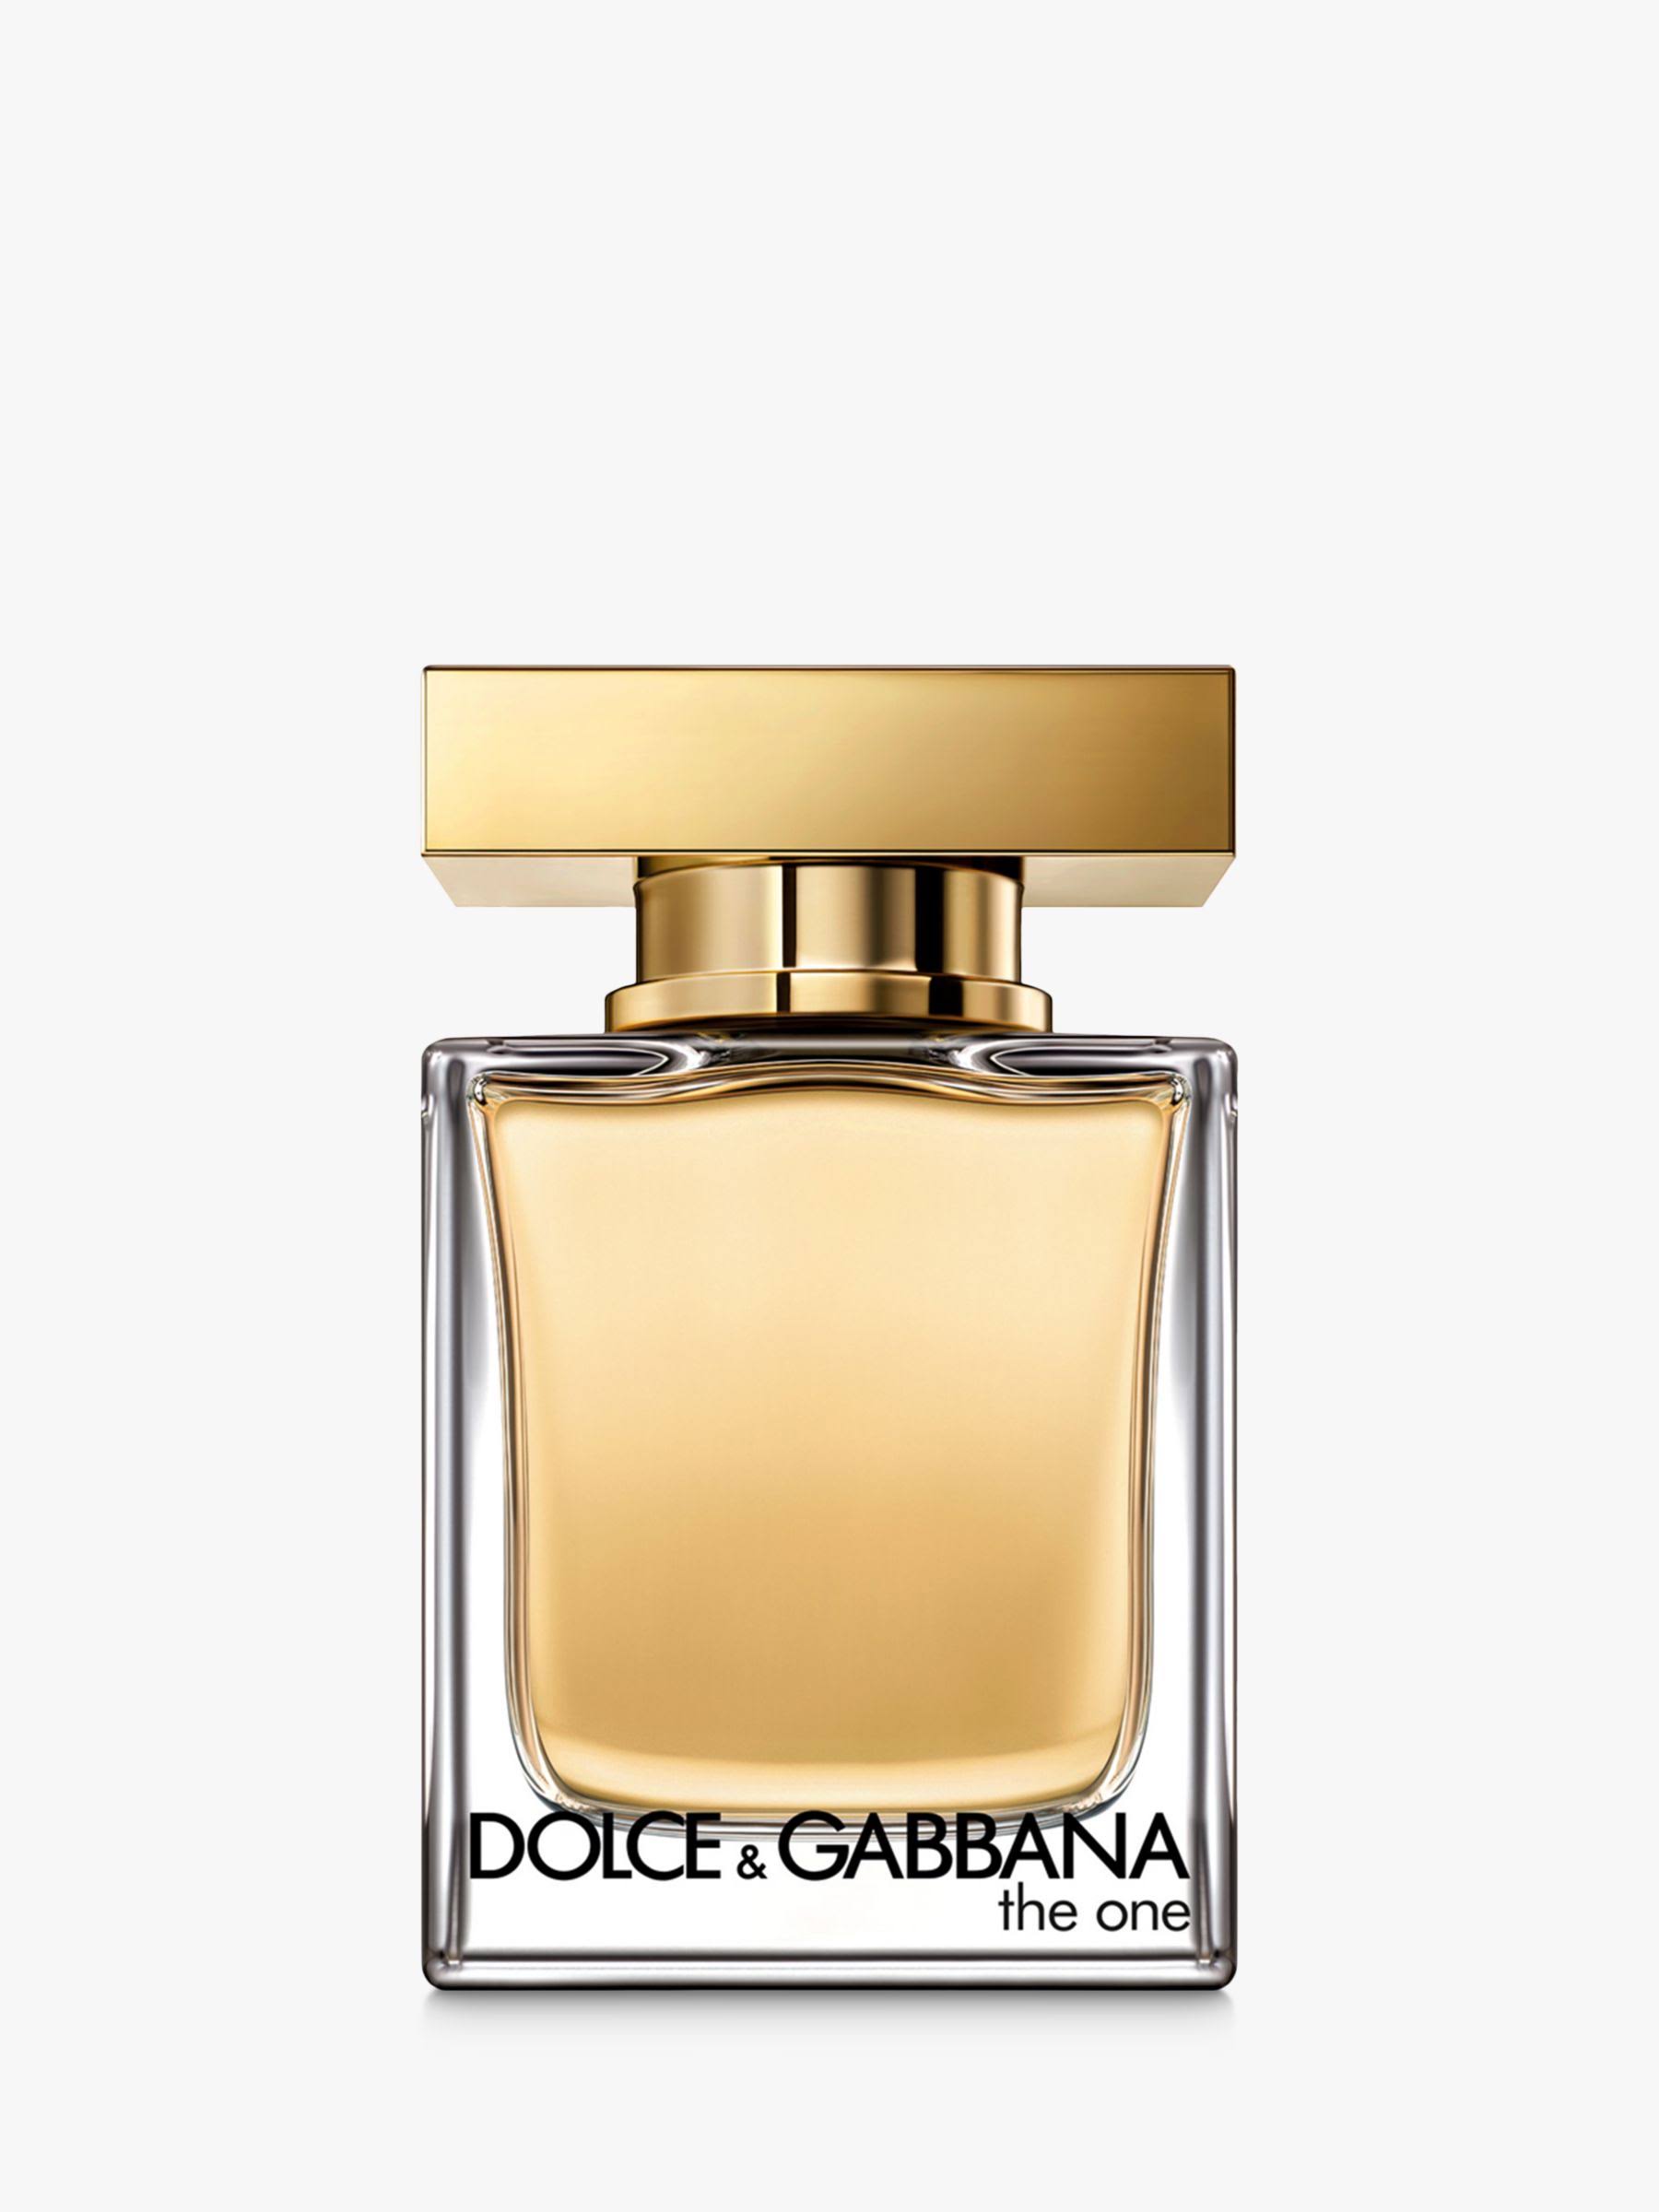 Dolce & Gabbana The One For Women Eau De Toilette - 30ml